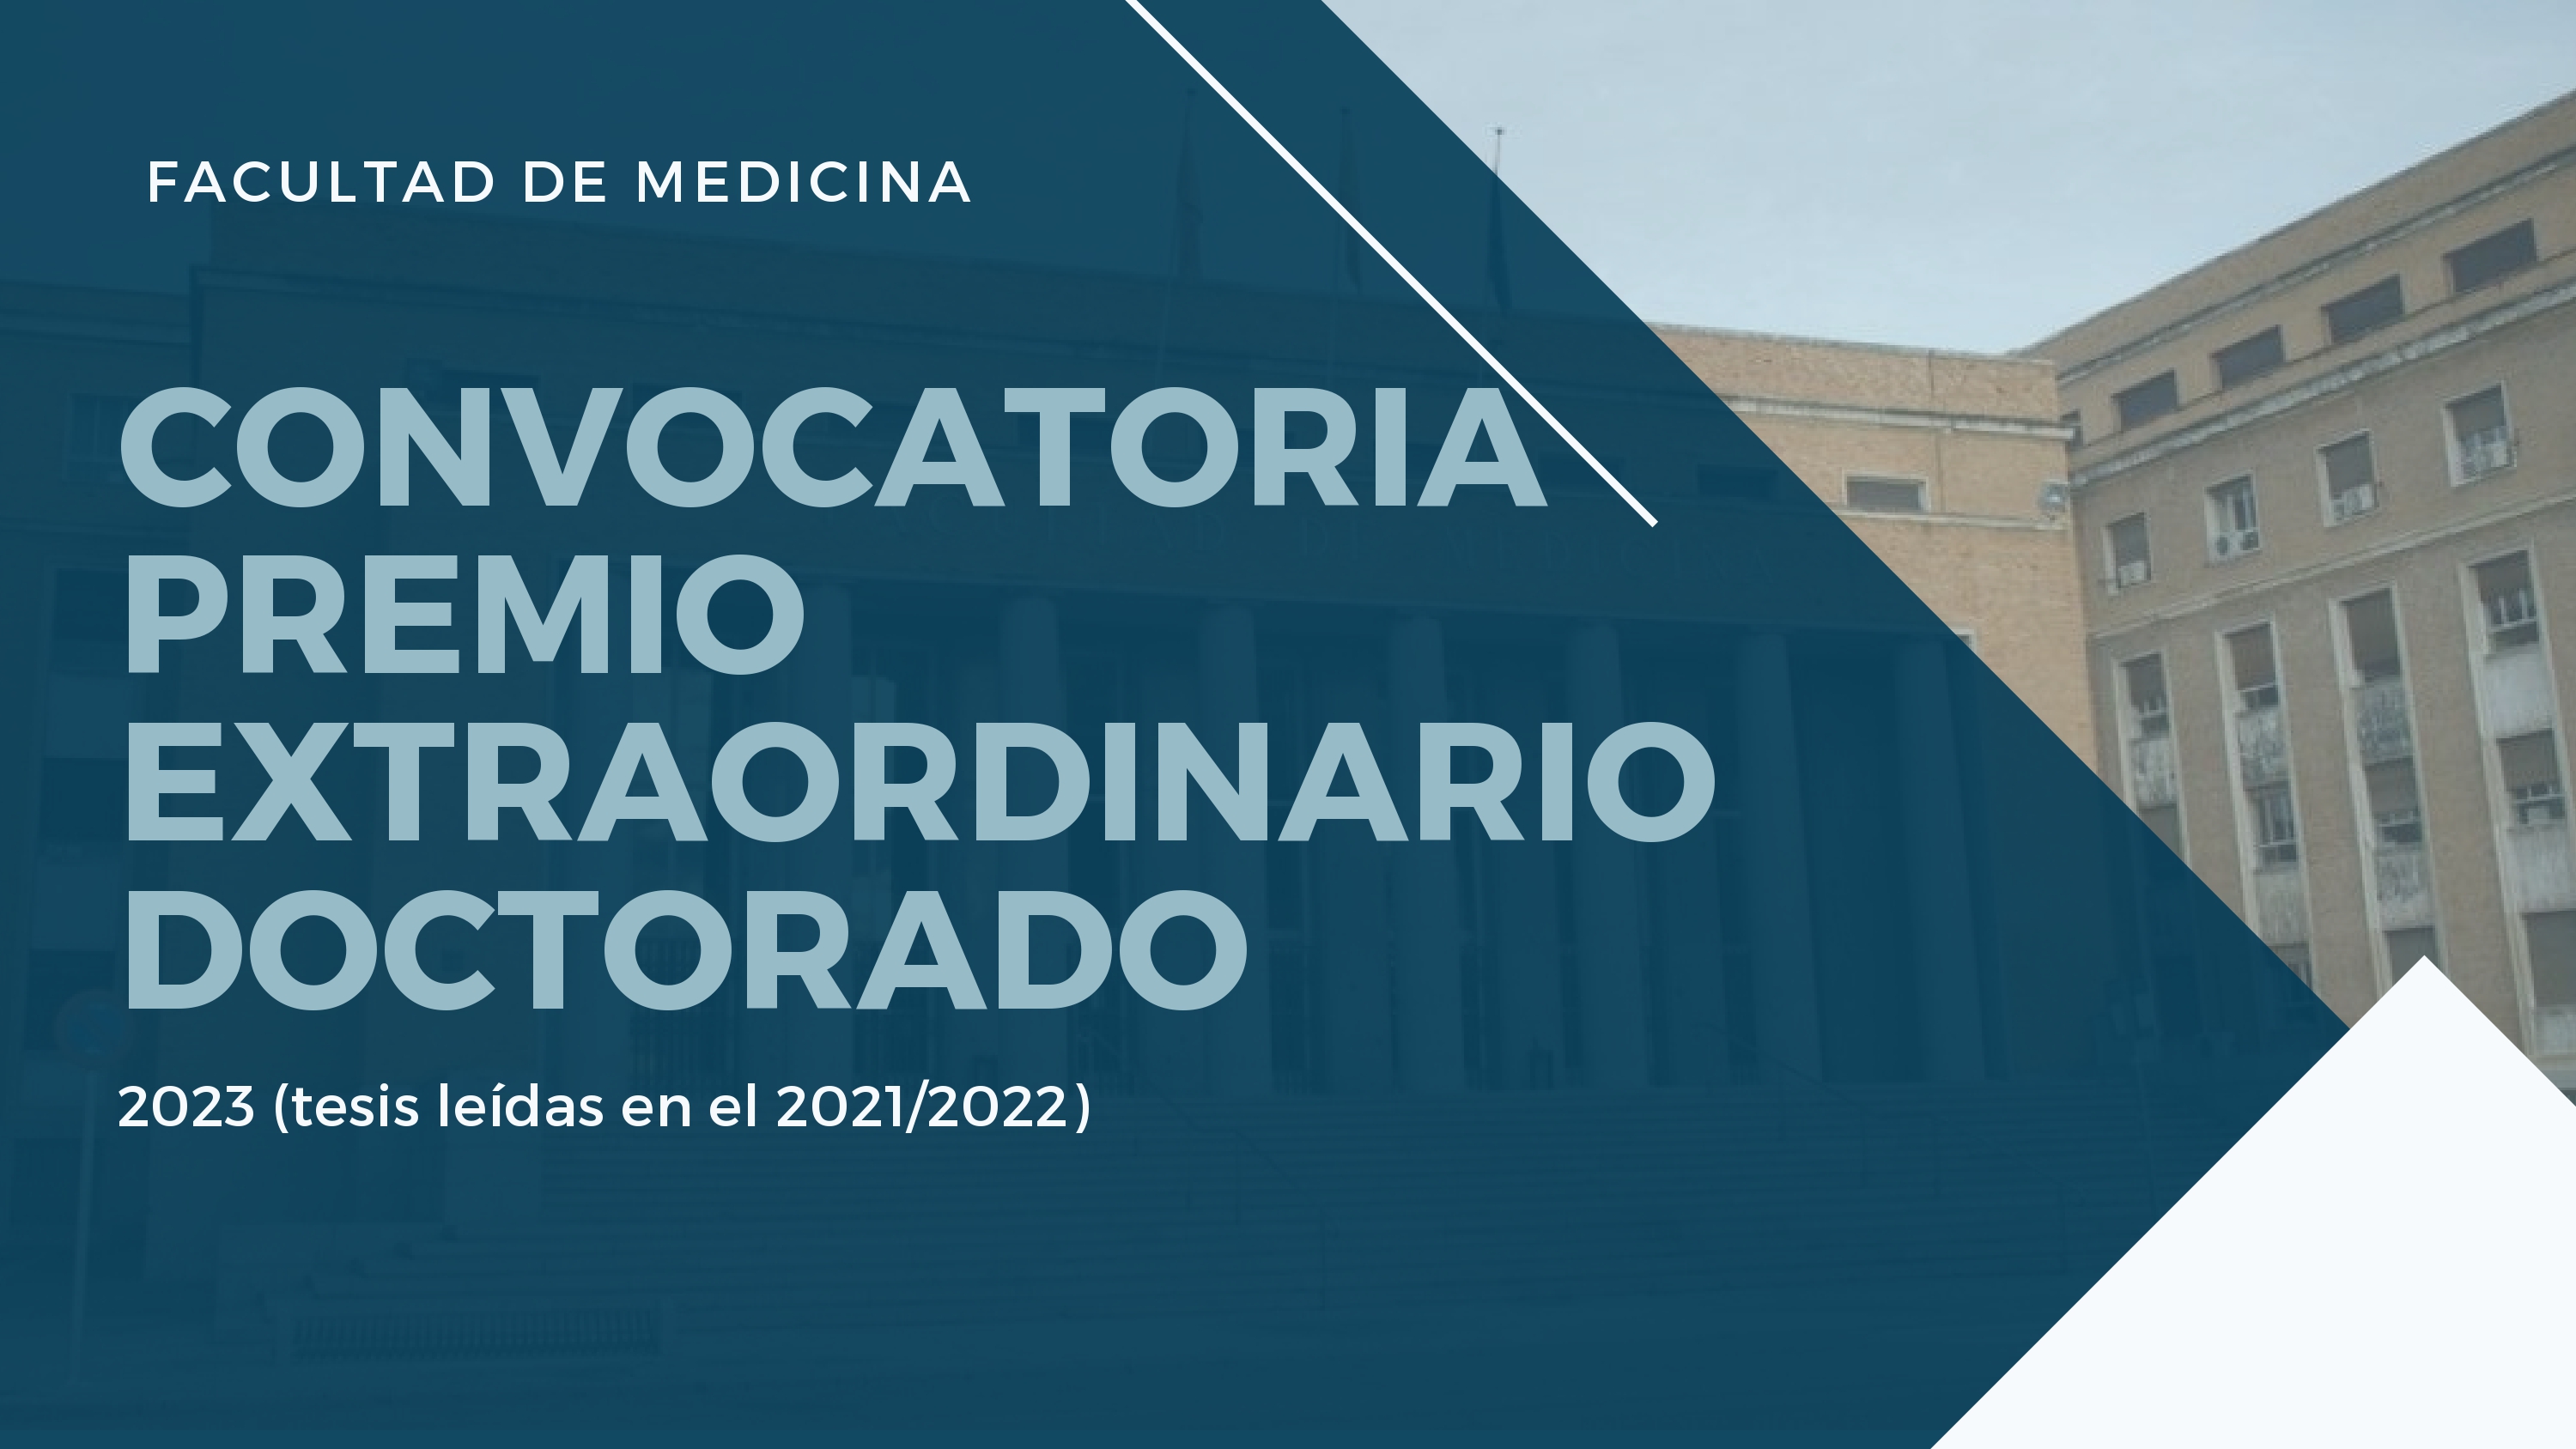 CONVOCATORIA DE PREMIOS EXTARORDINARIOS DE DOCTORADO 2023